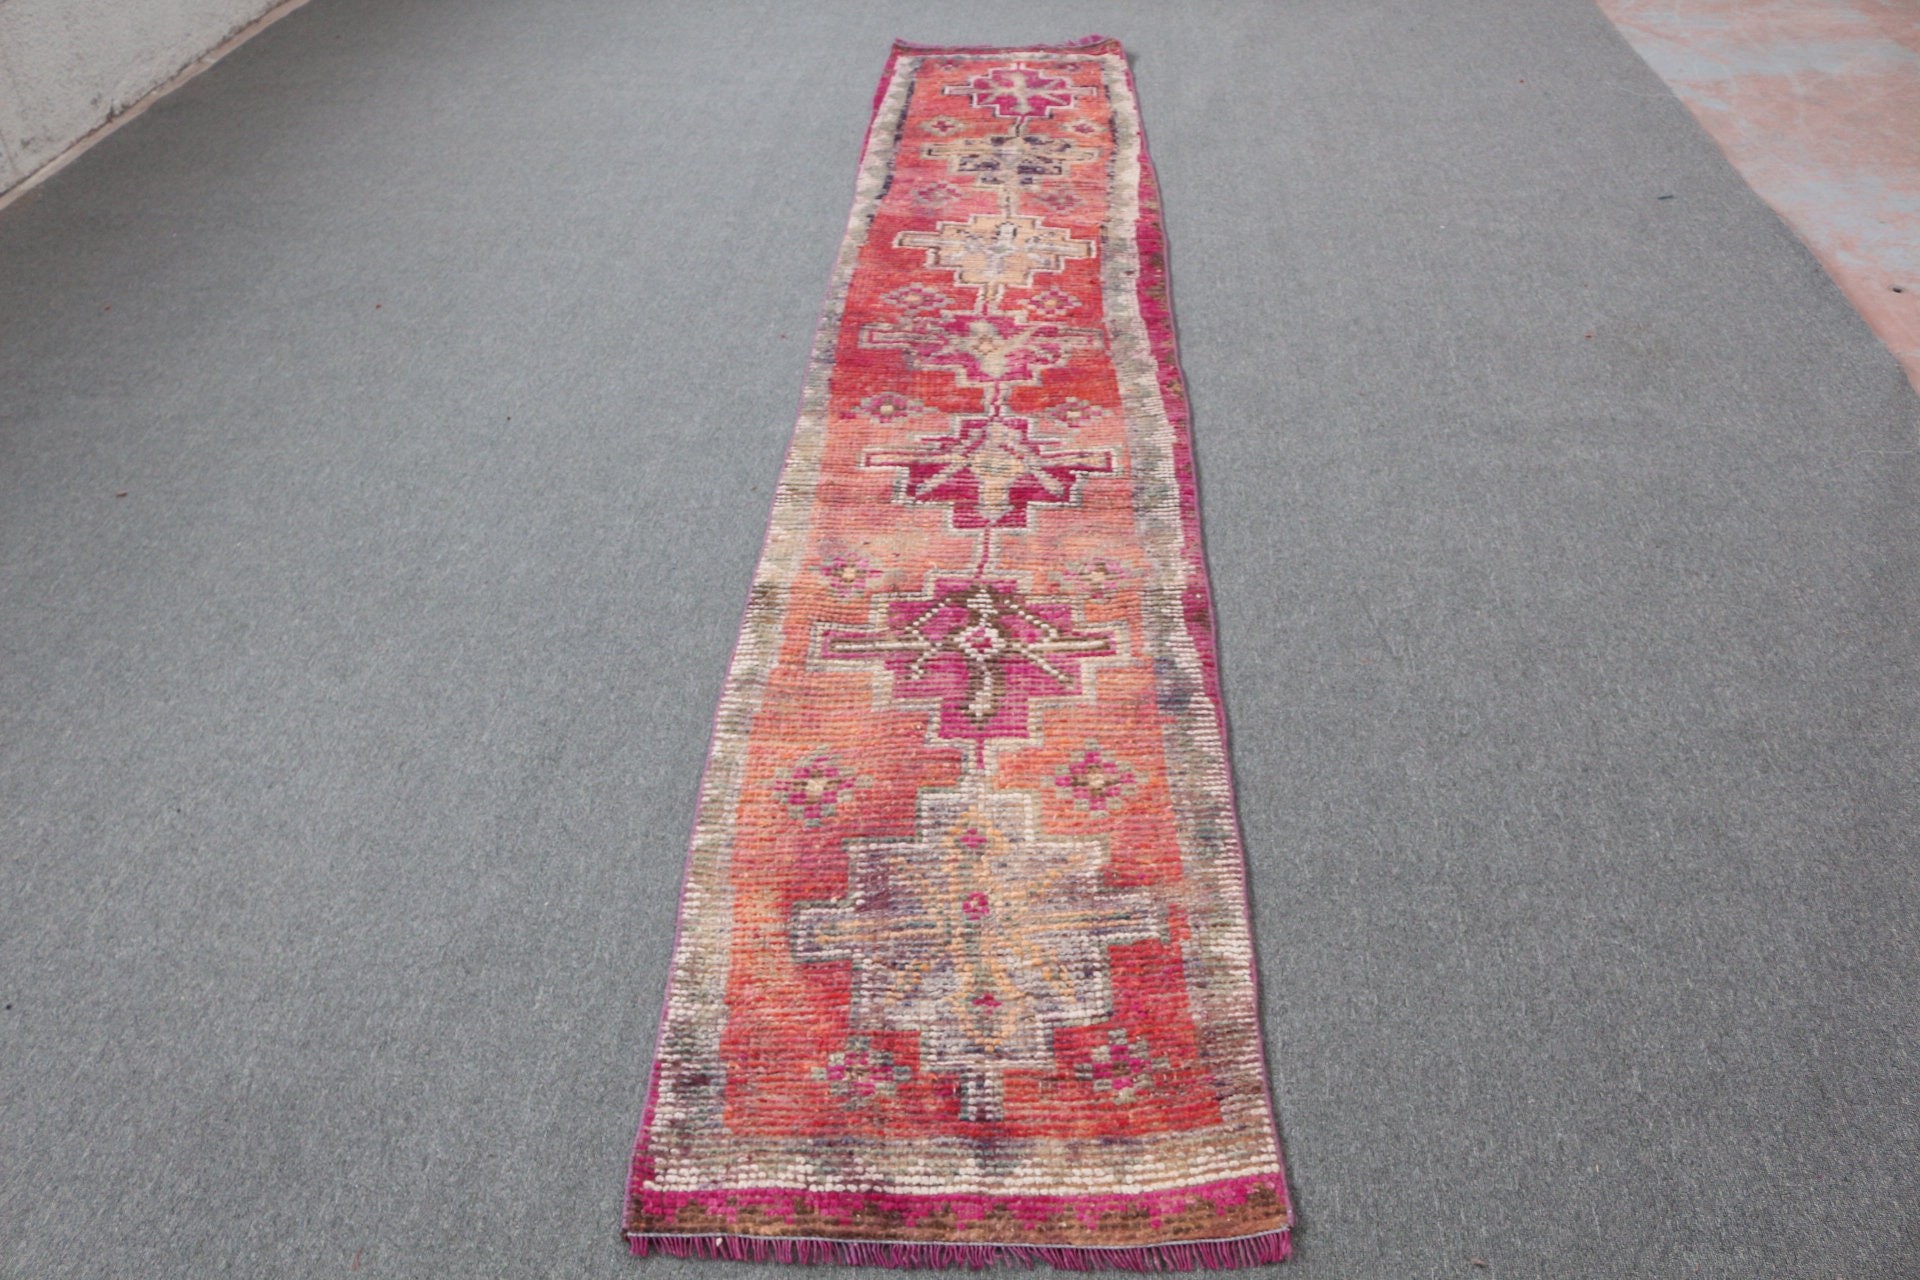 Anatolian Rug, Wool Rugs, Red Oriental Rug, Turkish Rug, 2.1x11.5 ft Runner Rug, Rugs for Stair, Corridor Rugs, Stair Rug, Vintage Rug